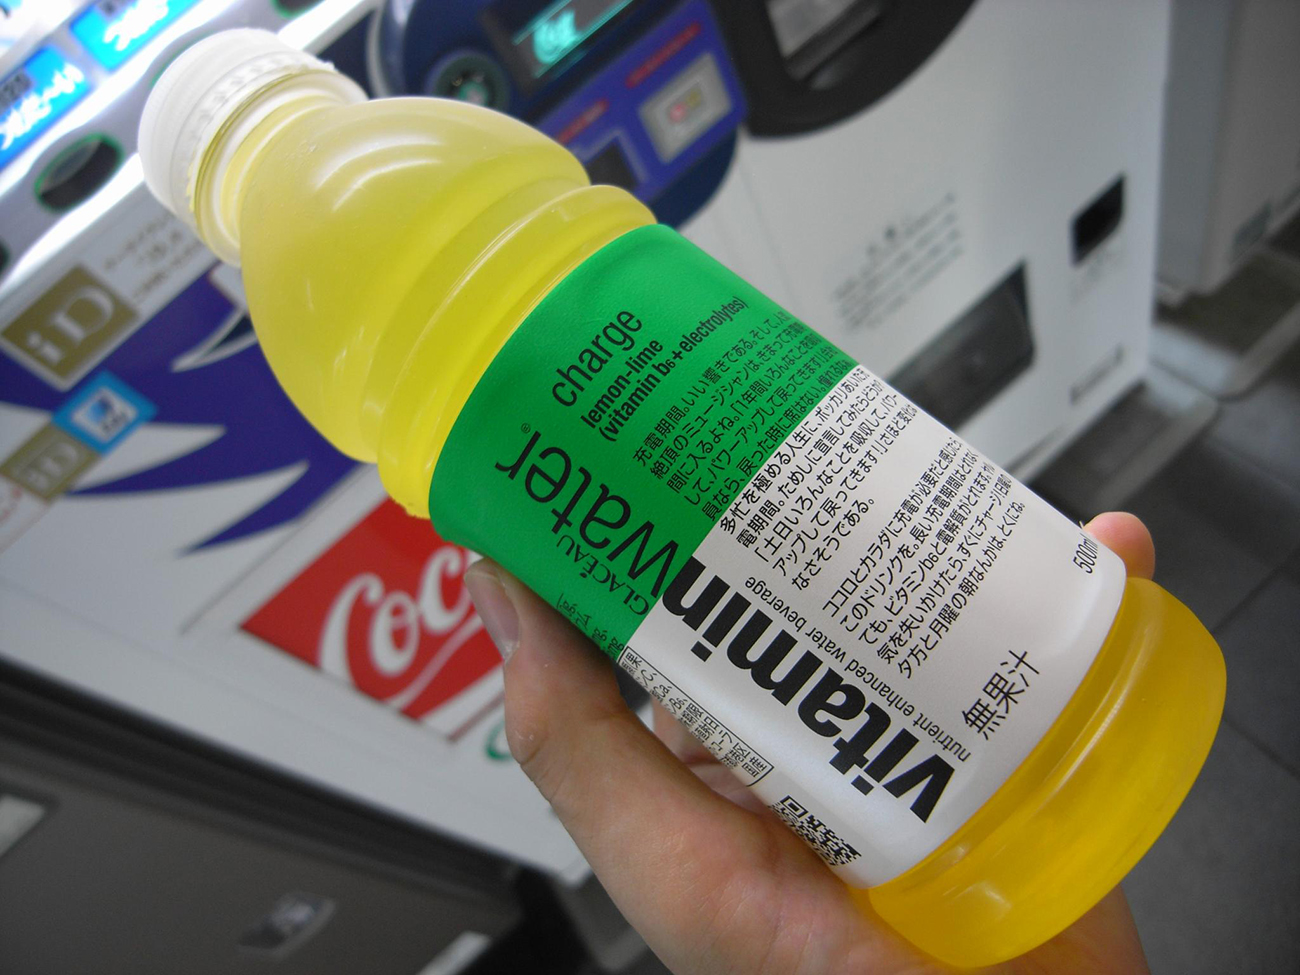 Une photographie montre une personne tenant une bouteille d'eau vitaminée. L'étiquette est écrite en lettres anglaises et japonaises.